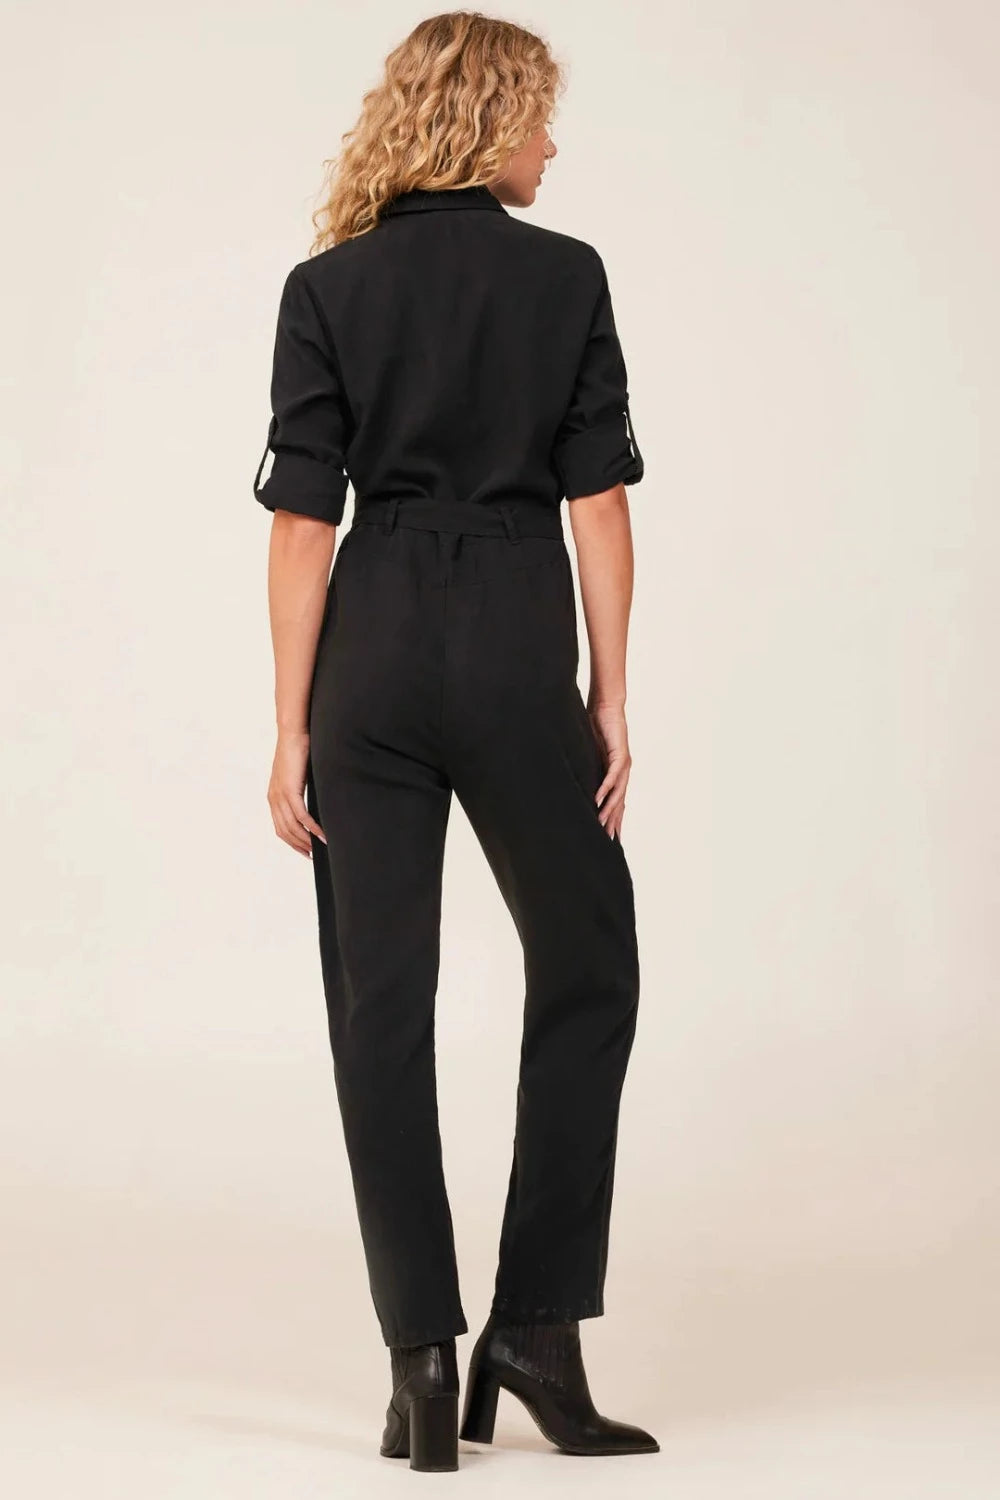 L/S Zip Front Jumpsuit in Vintage Black